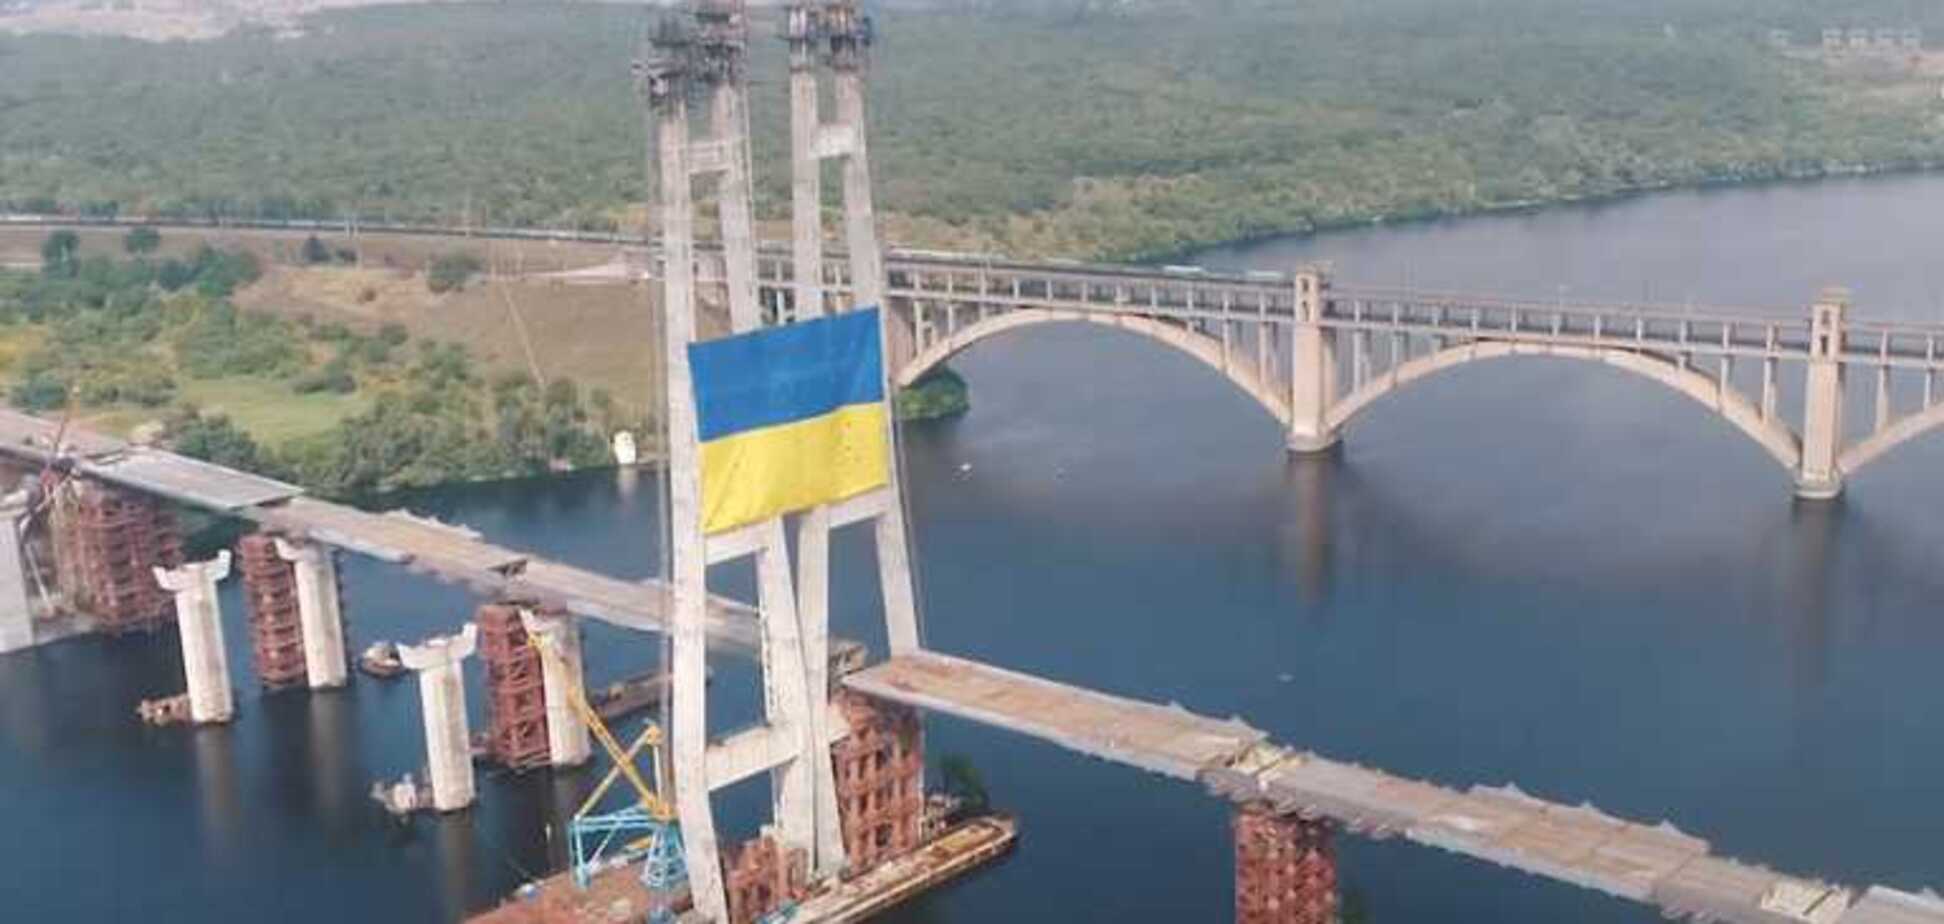 'Запоріжсталь' встановила національний прапор України на найвищій точці над Дніпром